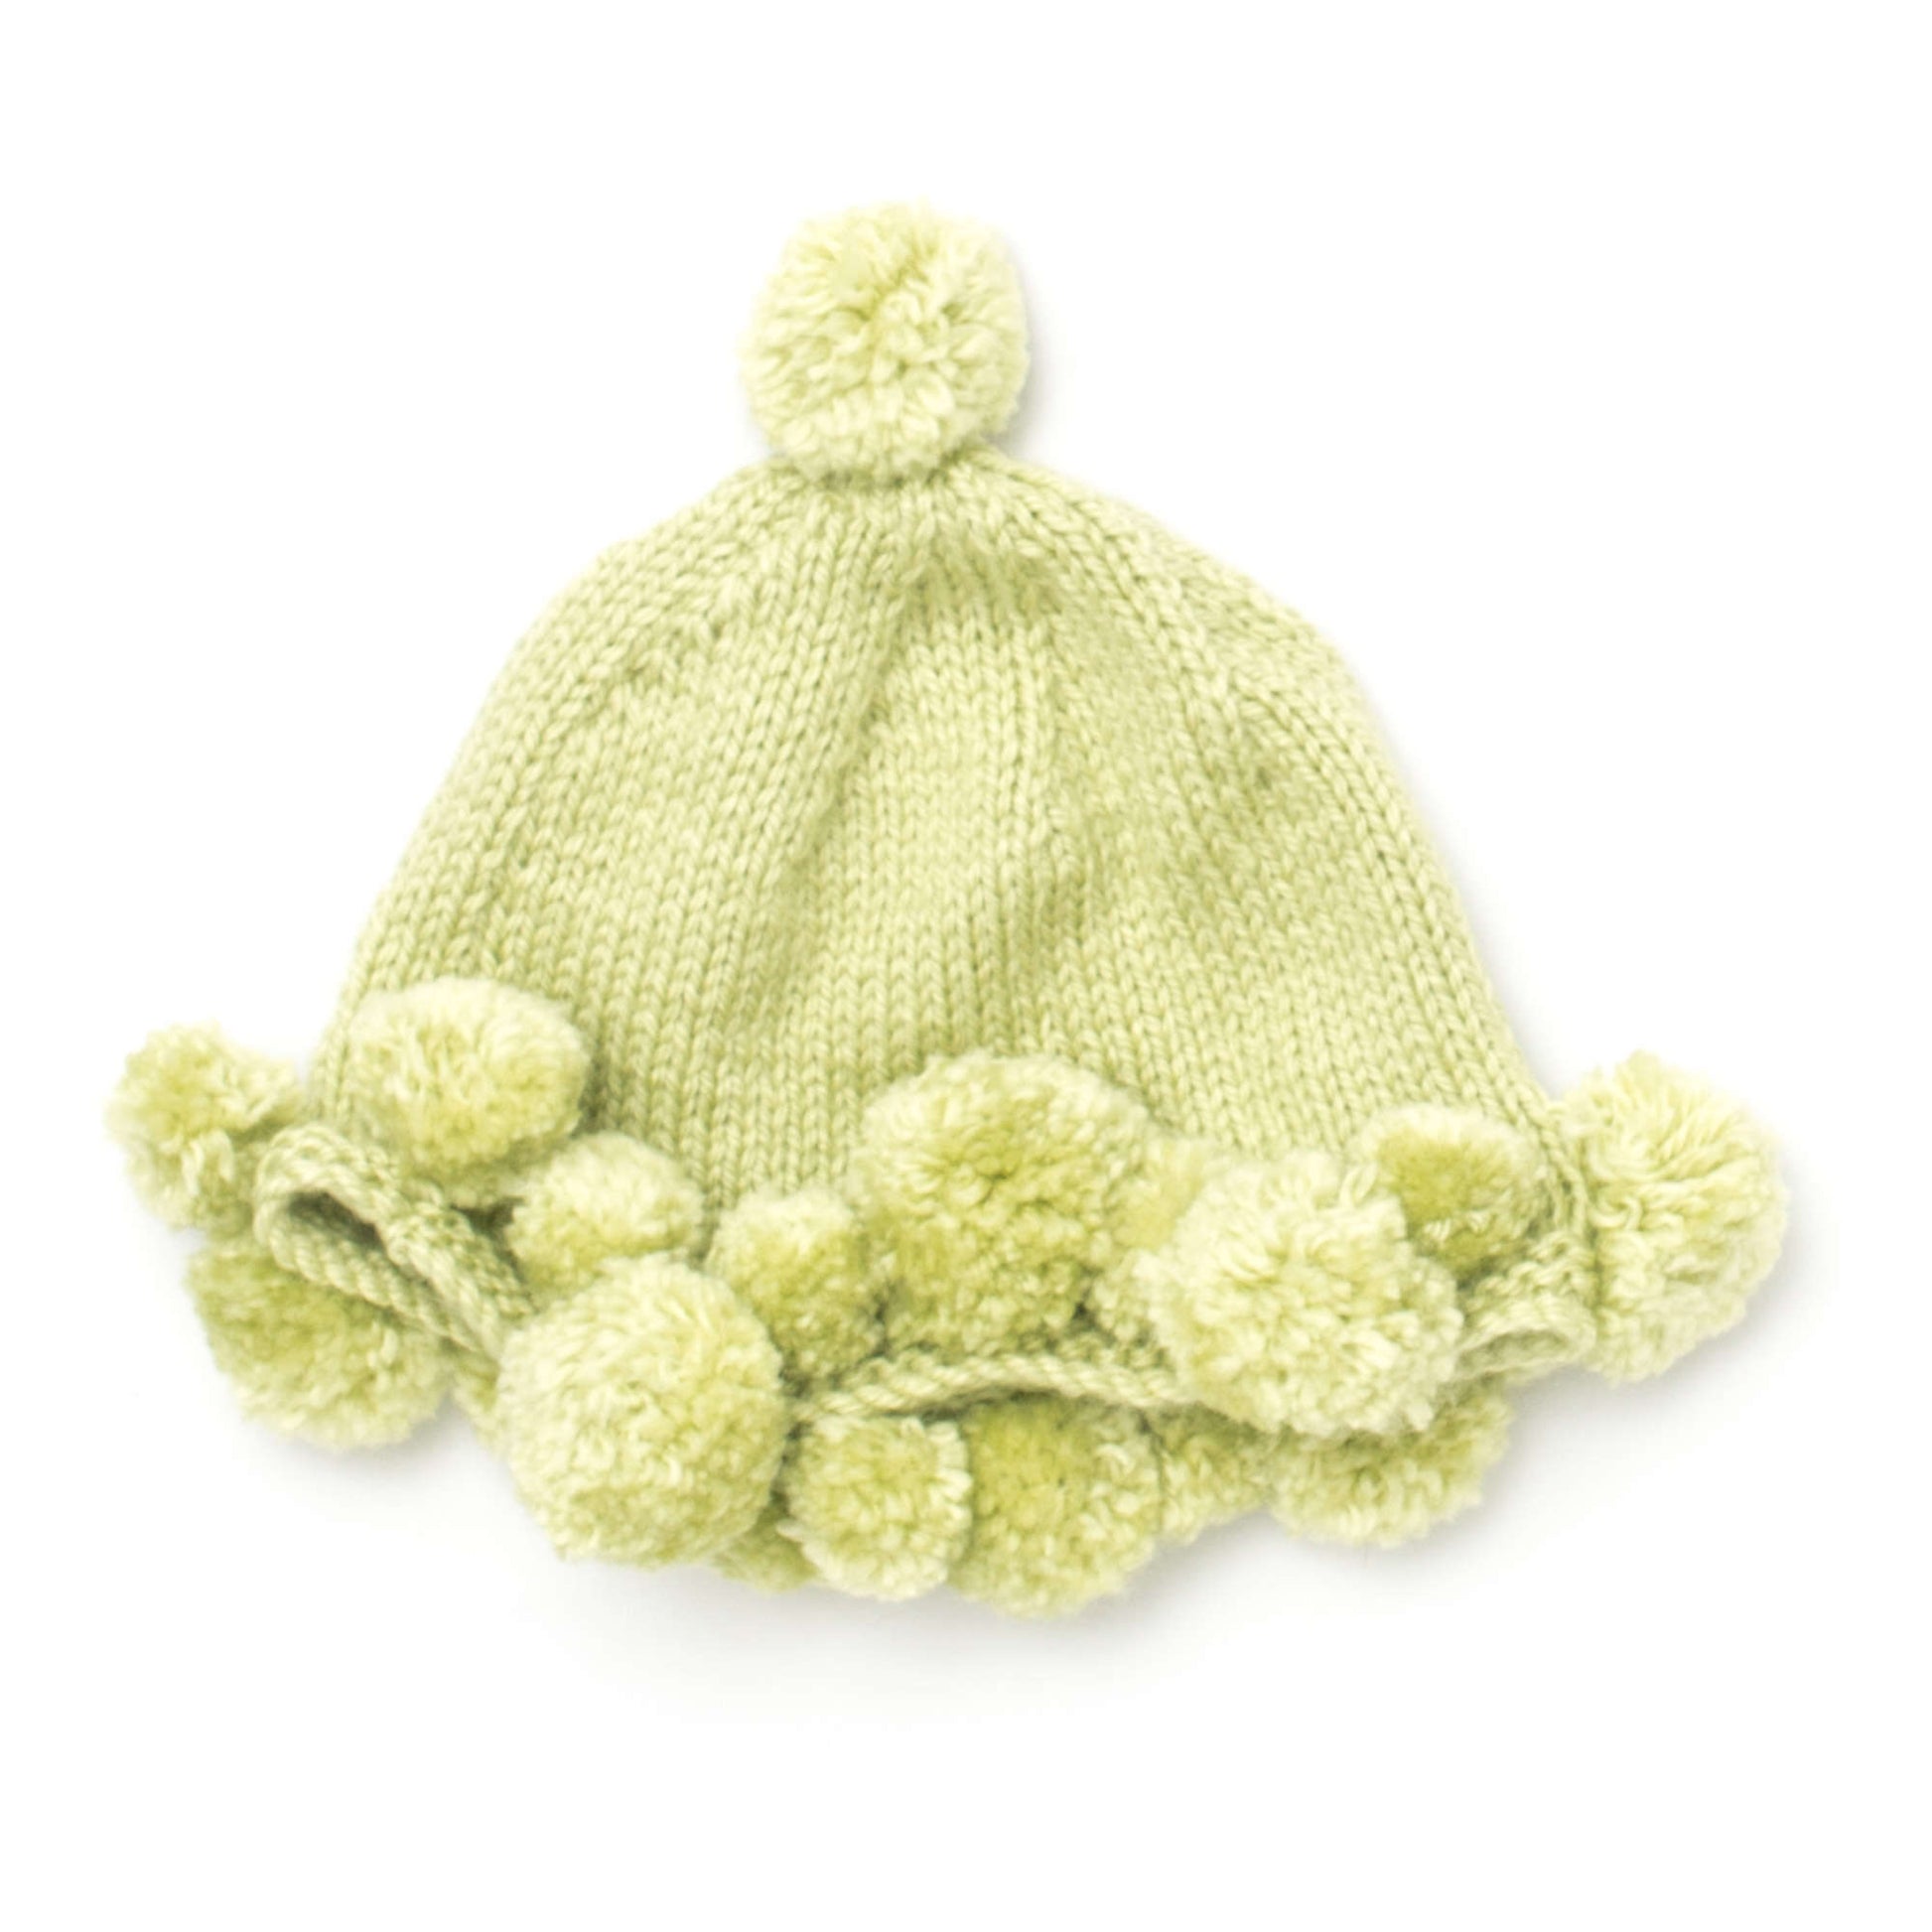 Free Bernat Pompom Baby Hat Knit Pattern